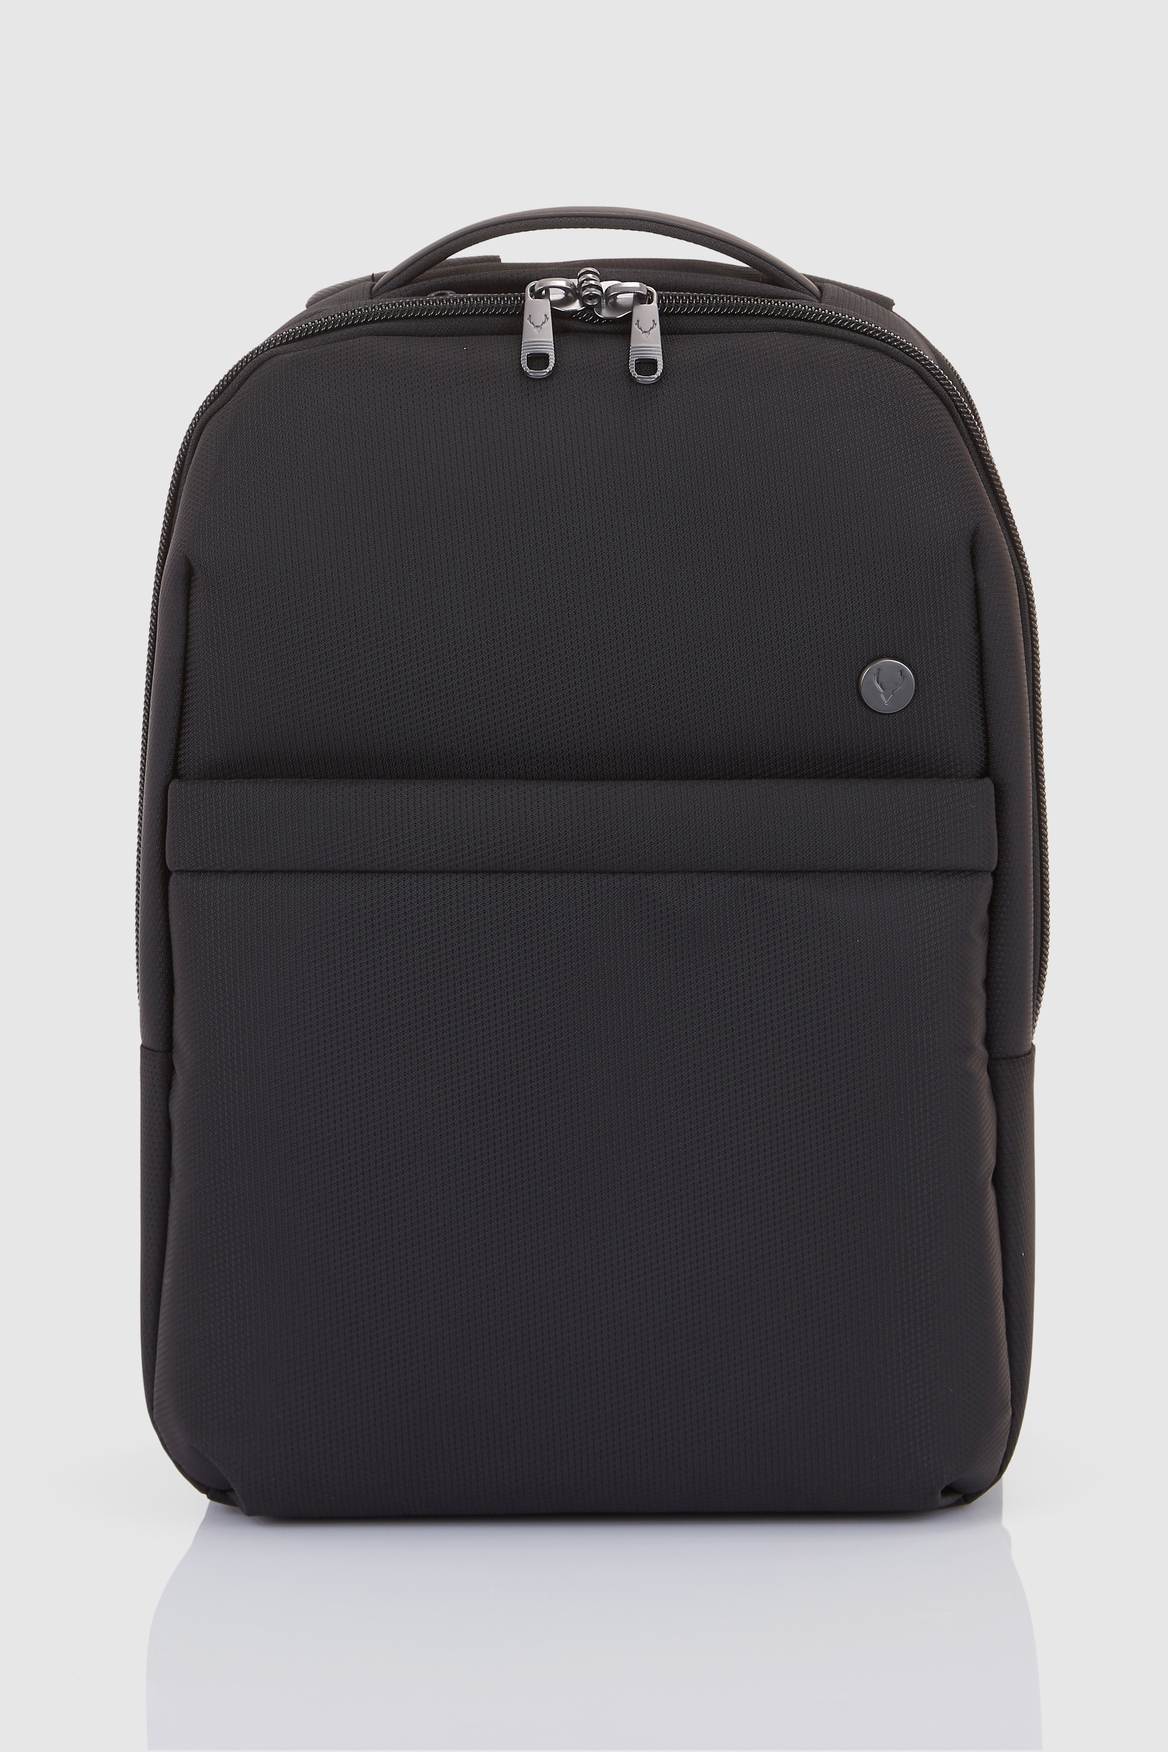 Antler Prestwick Large Backpack - black